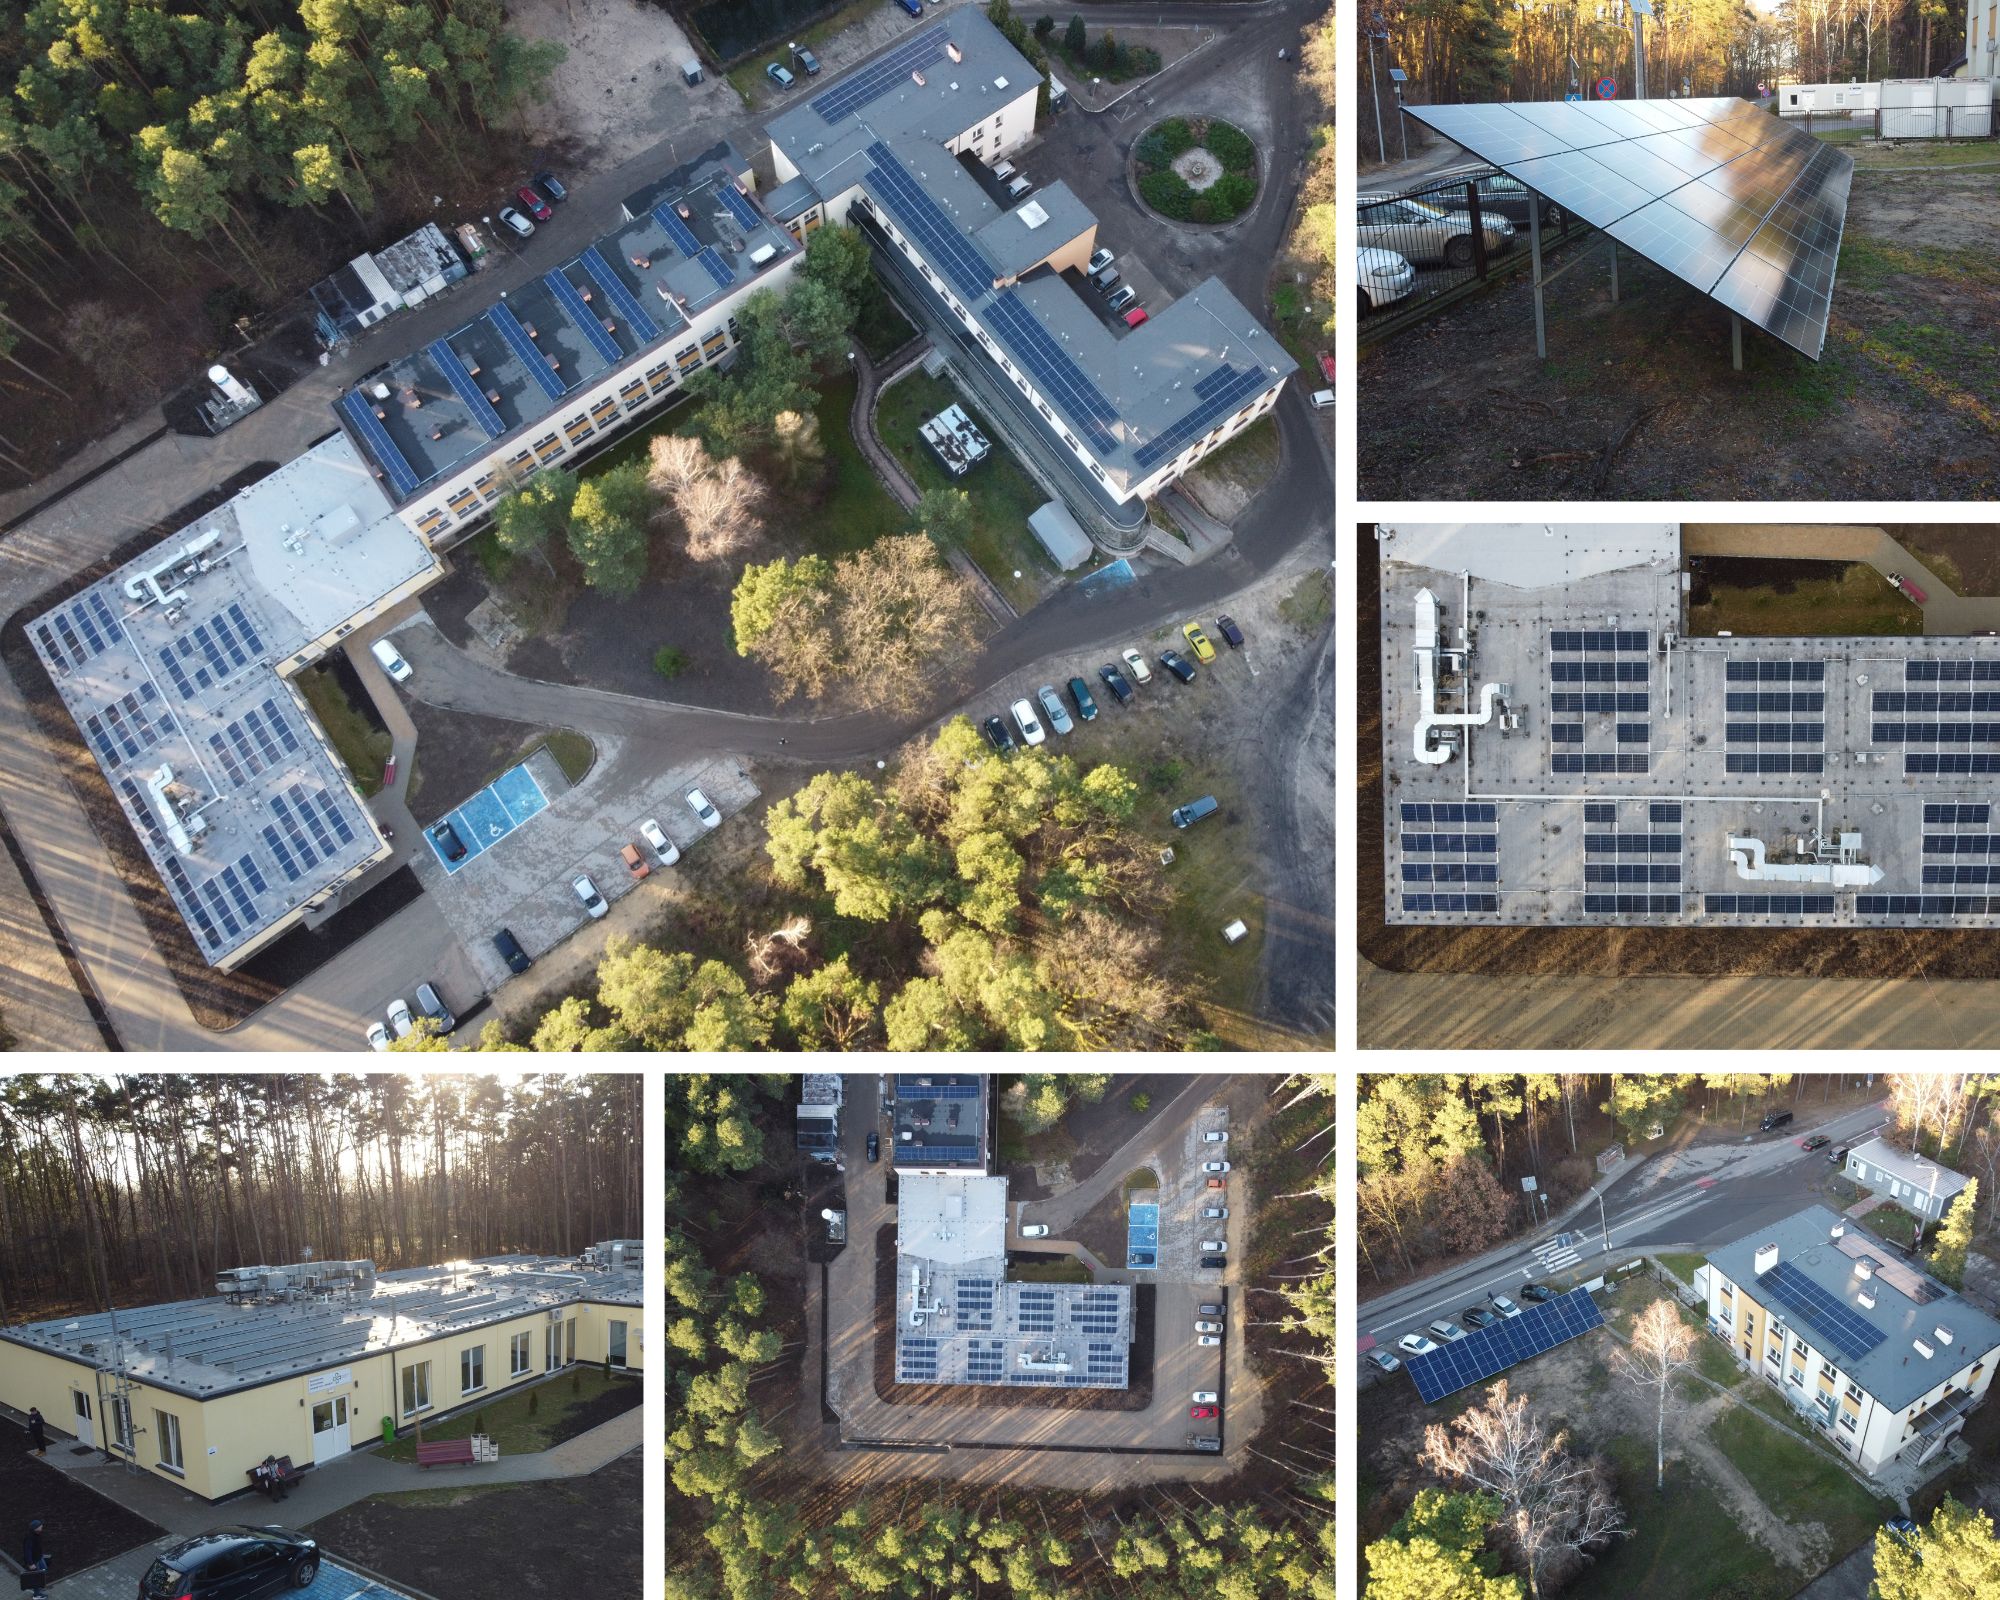 kolaż zdjęć szpitala wykonanych dronem na których prezentowane są panele fotowoltaiczne zamontowane na dachach budynków szpitala